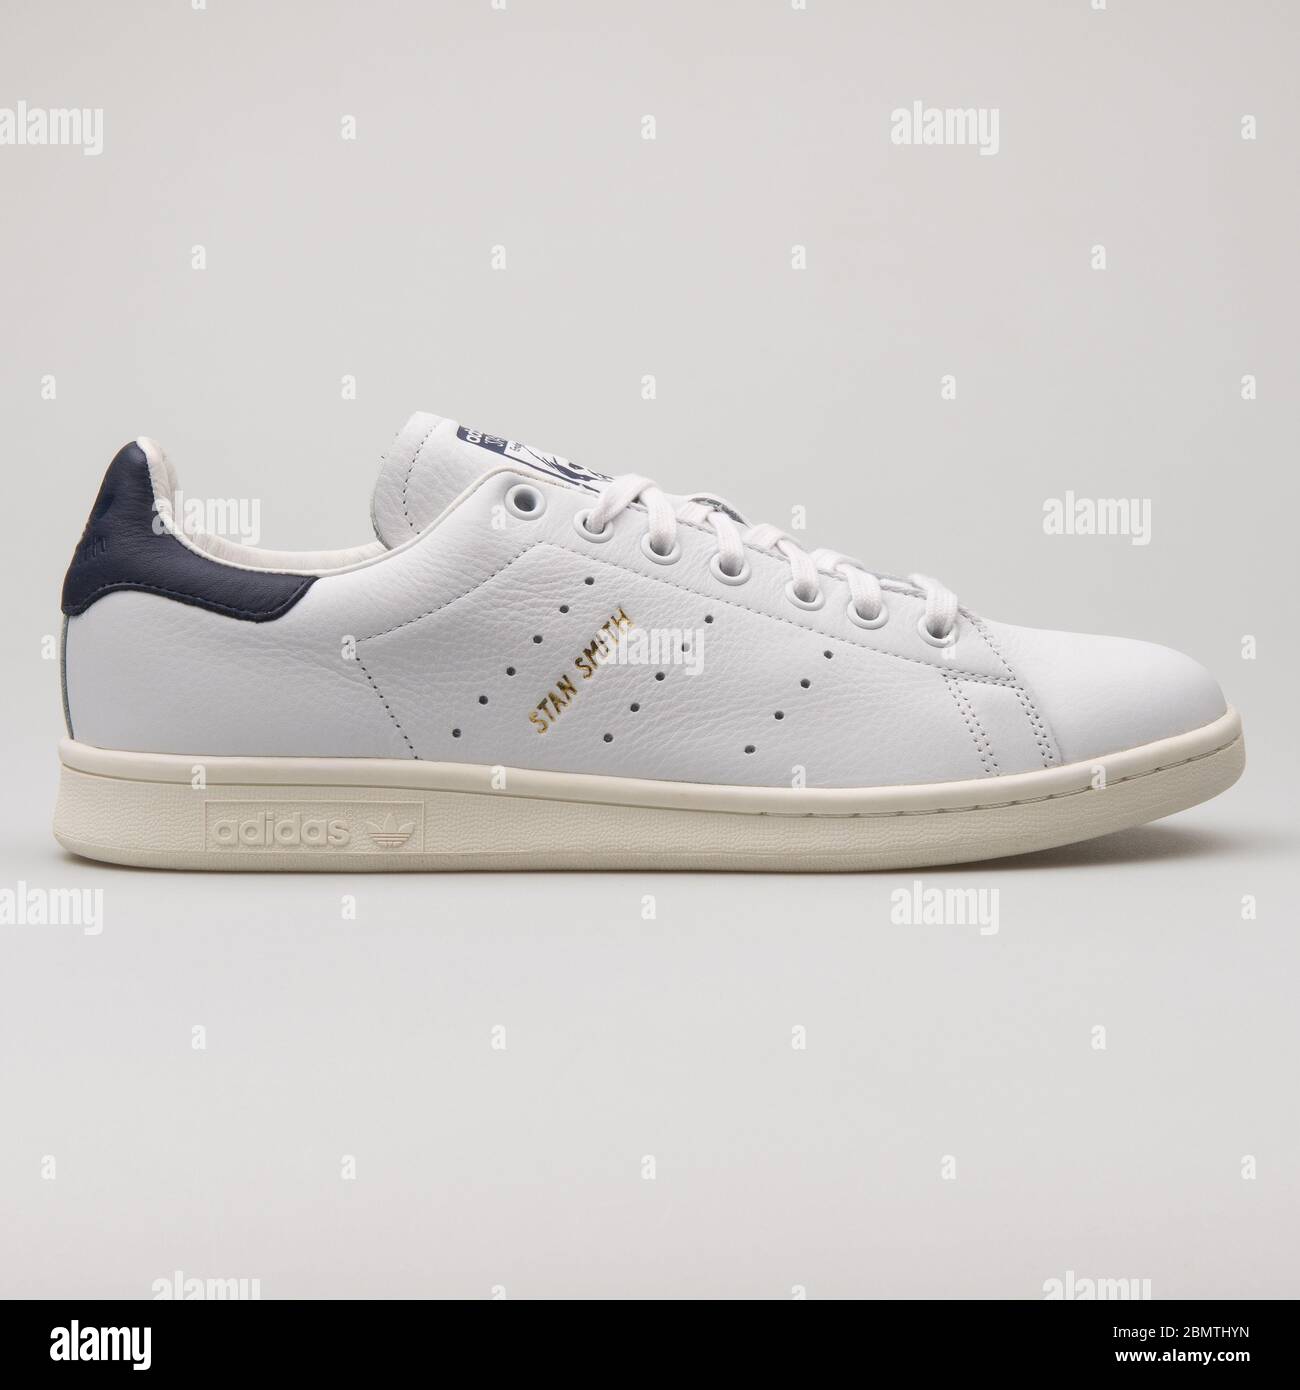 WIEN, ÖSTERREICH - 14. FEBRUAR 2018: Adidas Stan Smith Sneaker in Weiß und  Marineblau auf weißem Hintergrund Stockfotografie - Alamy